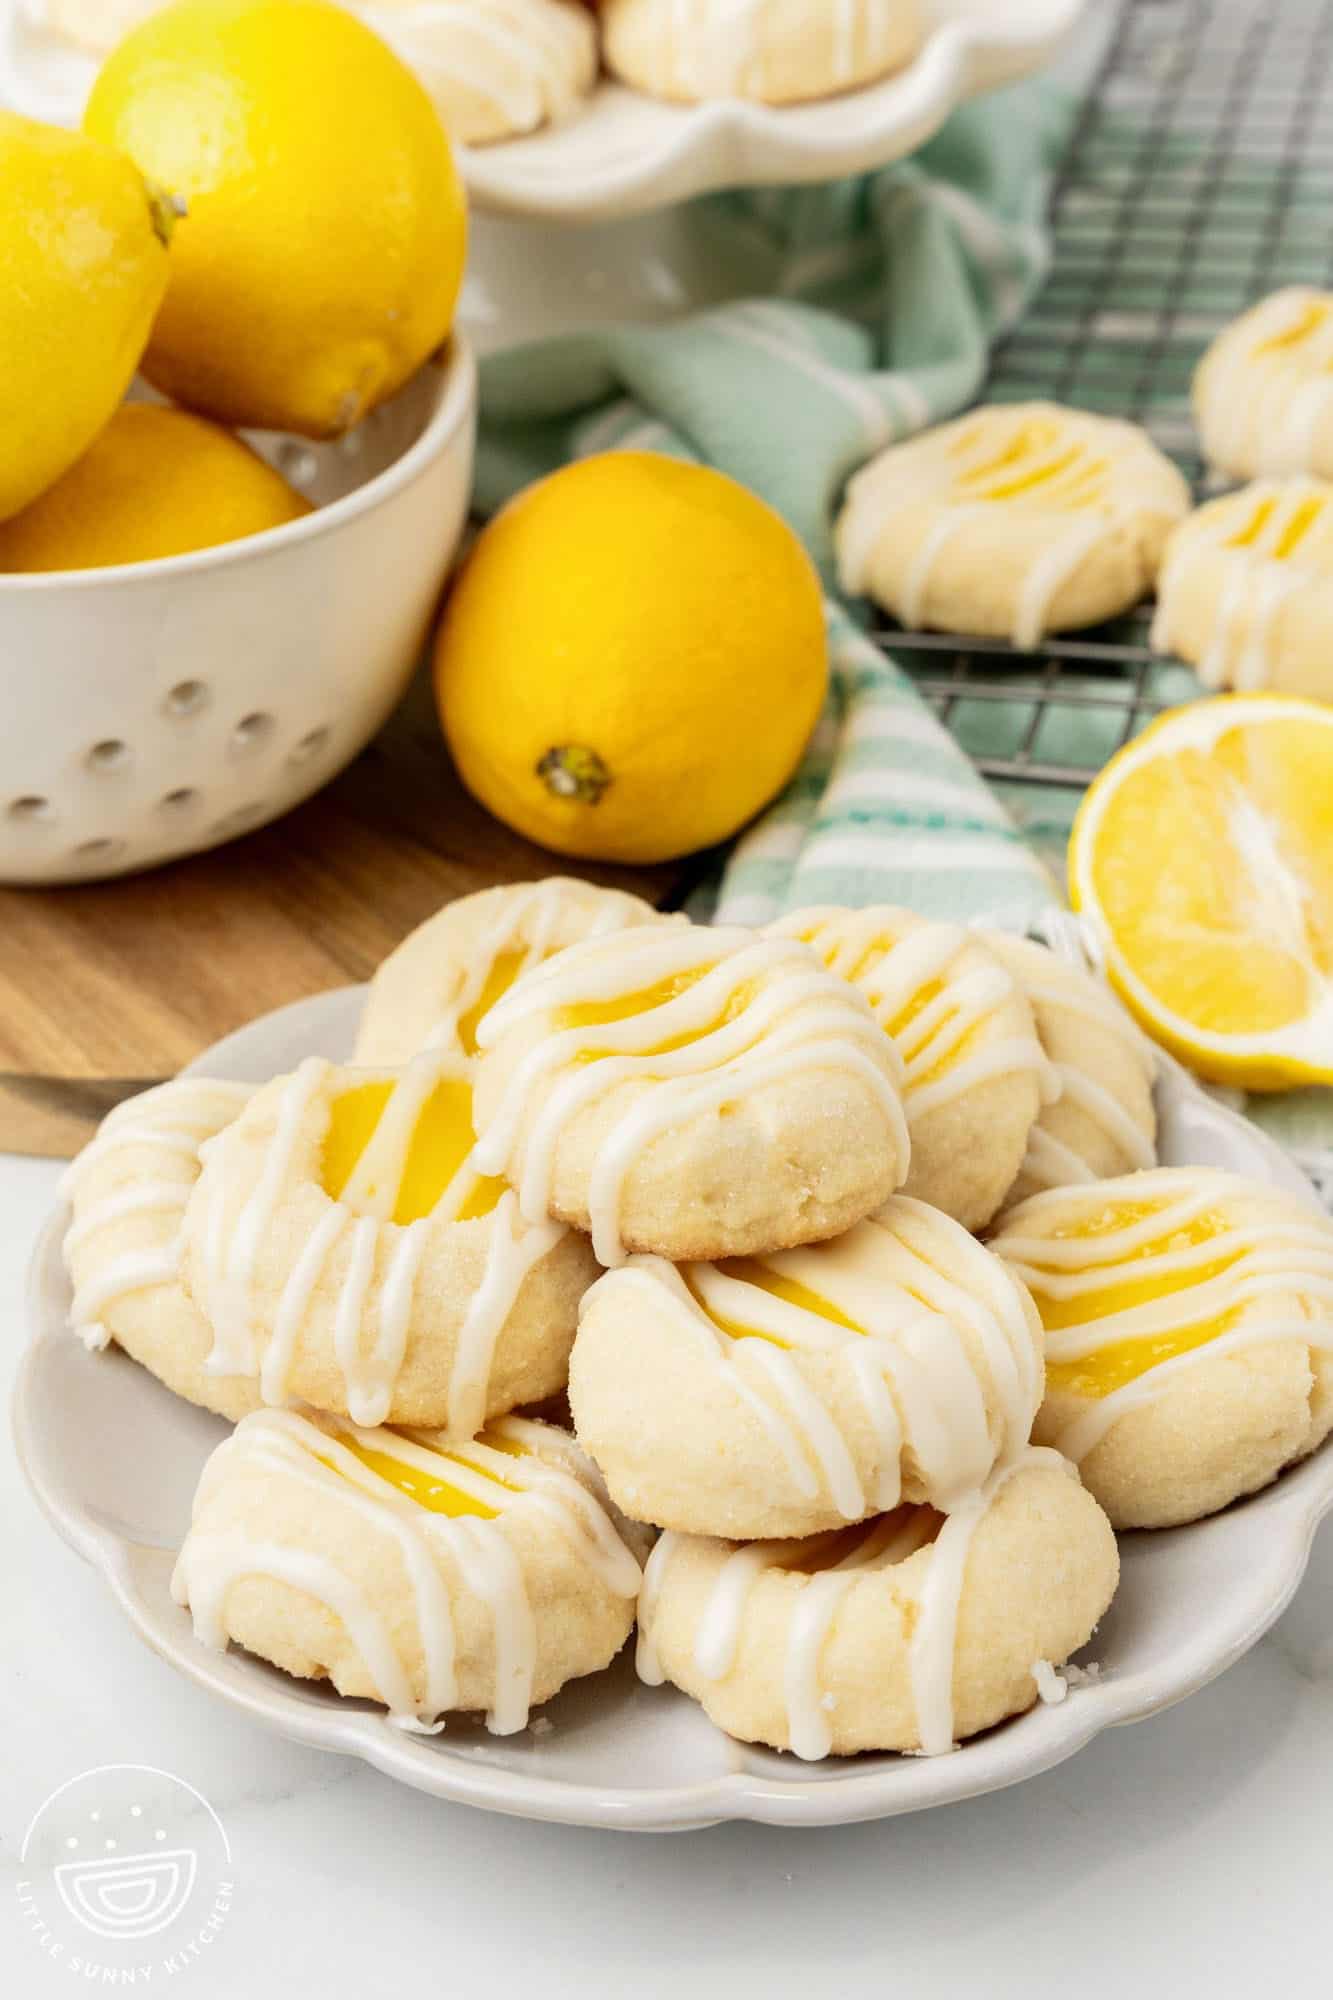 a plate of lemon curd cookies. Behind the cookies is a bowl of fresh lemons.